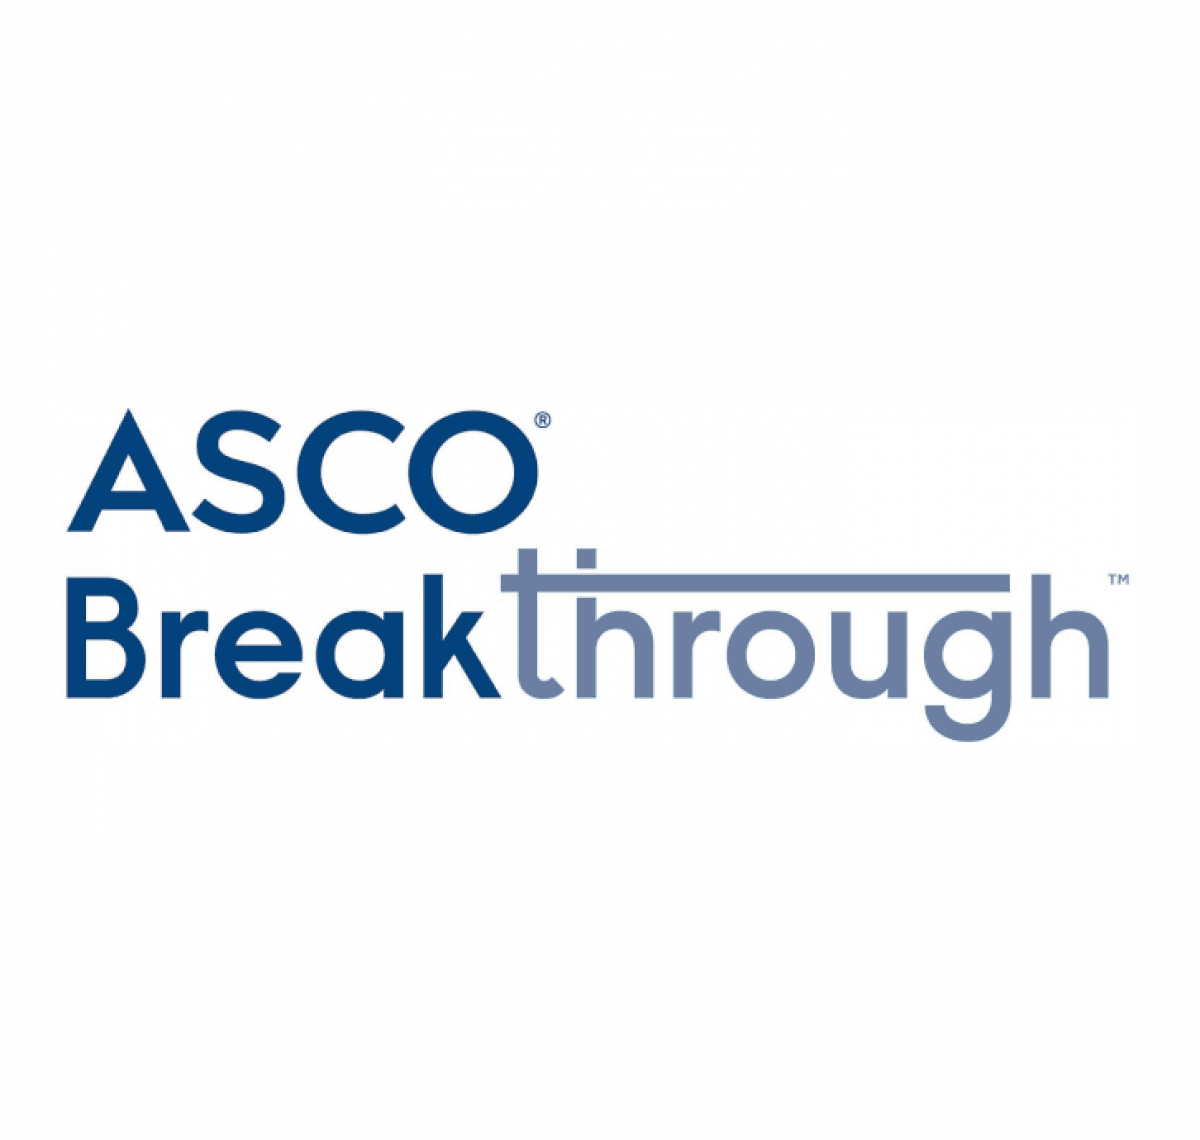 Product ASCO Breakthrough Innovations in Oncology - Segítség a személyre szabott daganatterápiában — Oncompass Medicine image